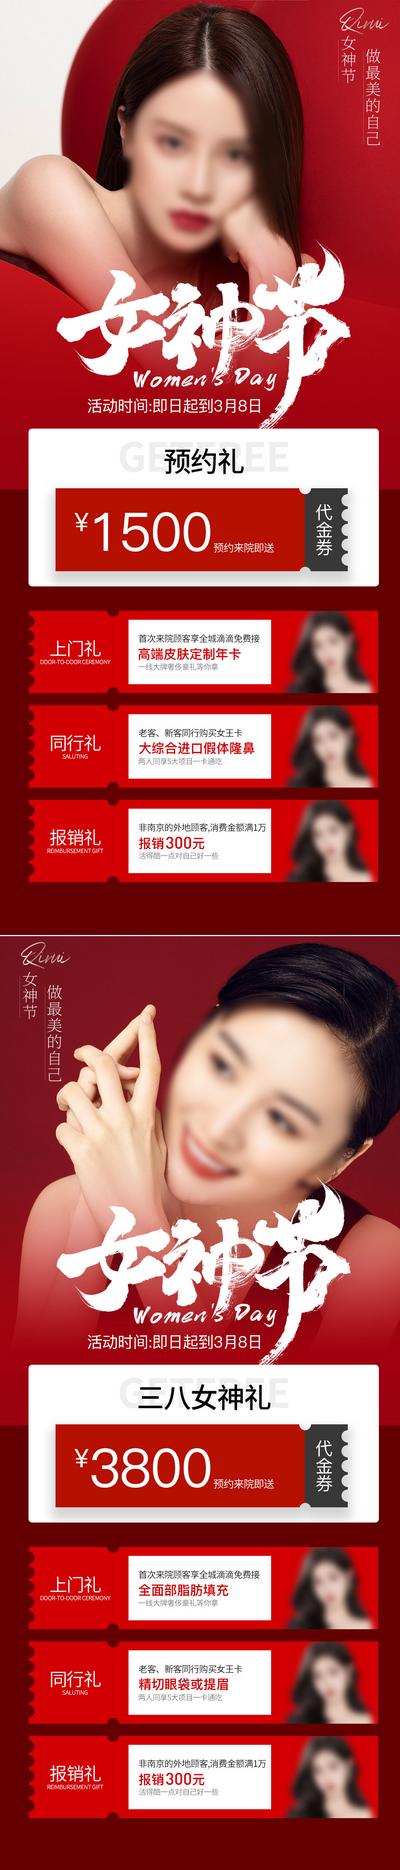 南门网 广告 海报 节日 妇女节 38 女神节 代金券 预约 系列